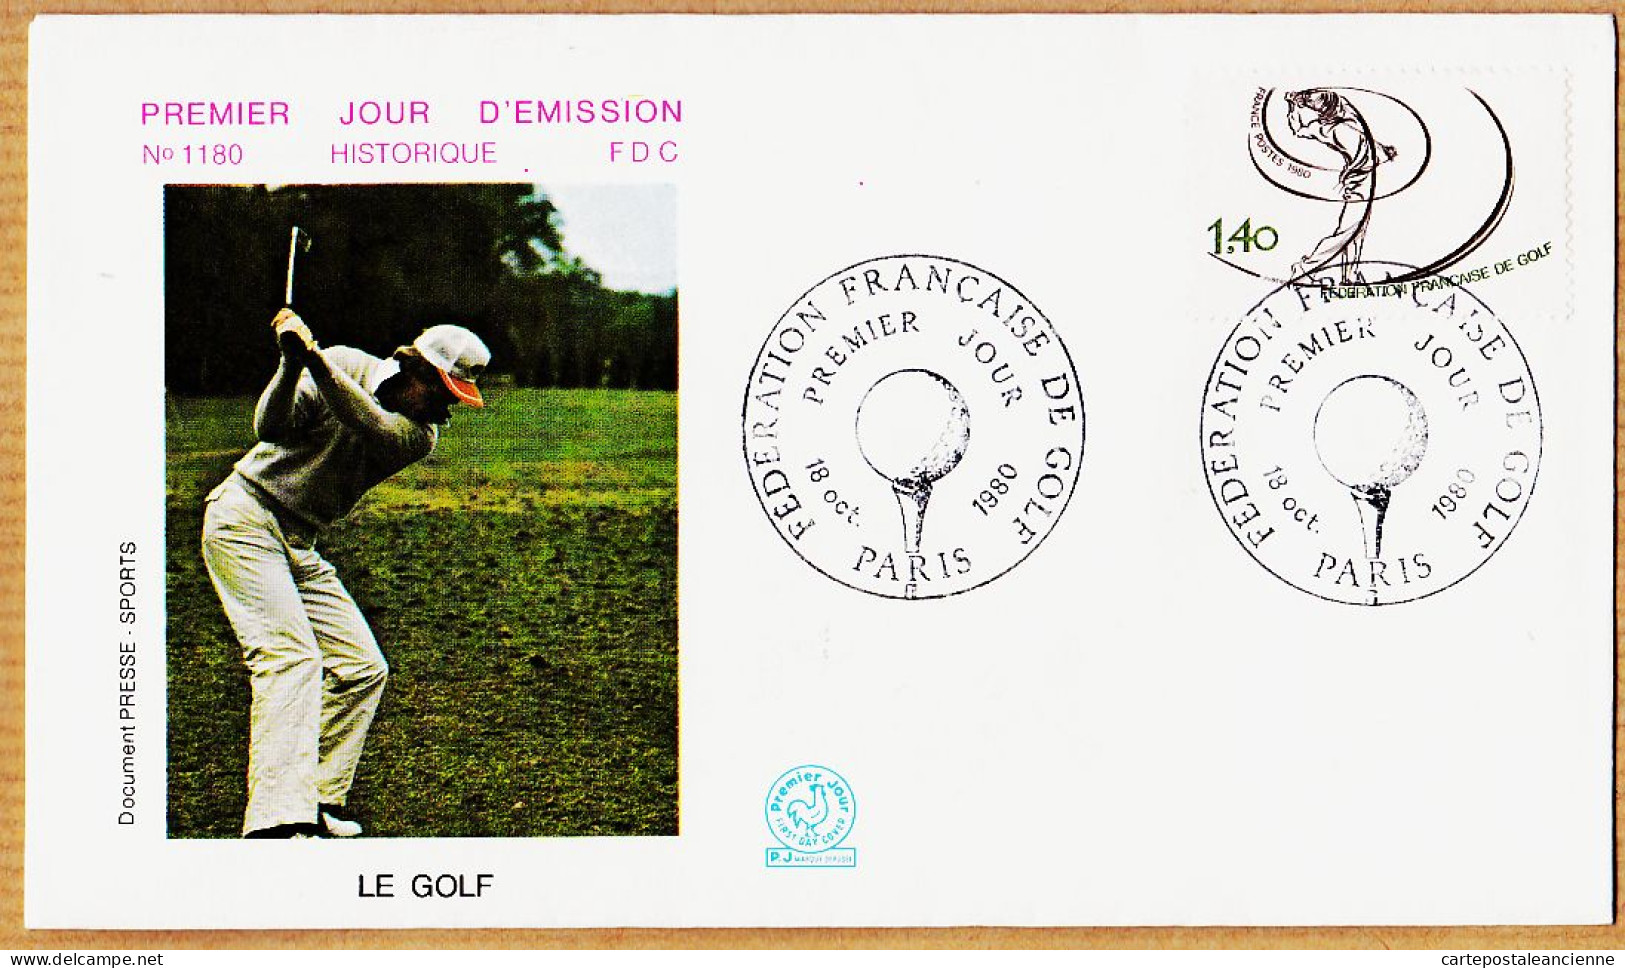 04764 / FDC Le GOLF 18 Octobre 1980 Fédération Française PARIS Premier Jour Emission N° 1180 - Golf